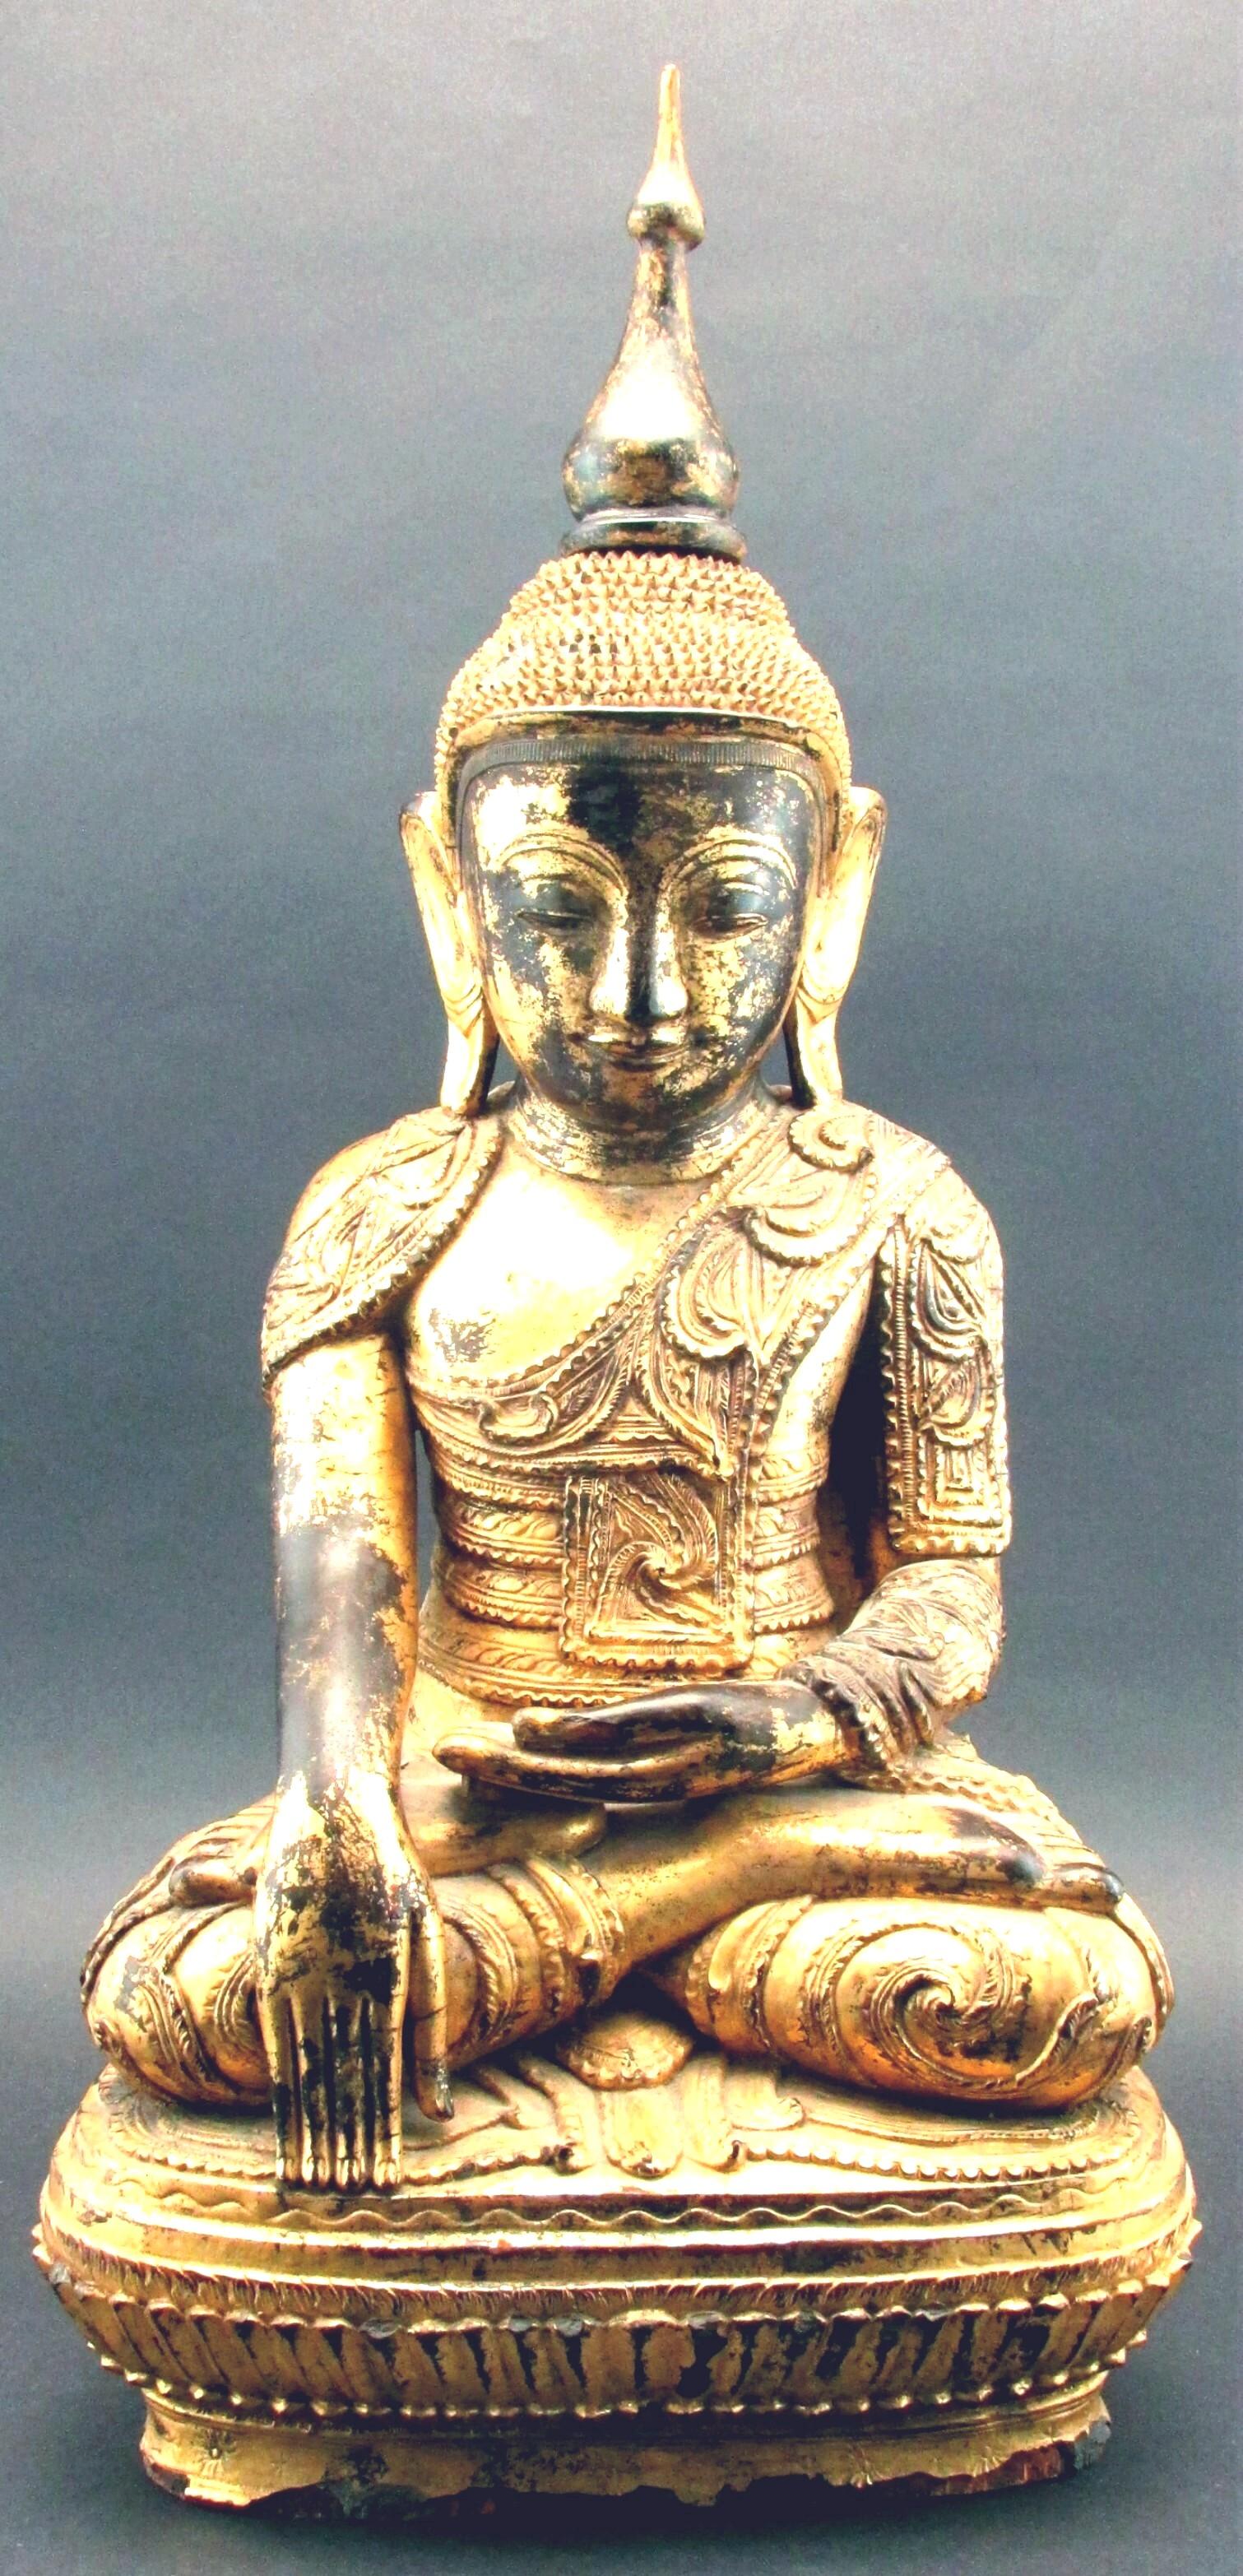 Un impressionnant et exceptionnel bouddha de style Shan sculpté à la main, laqué noir et doré. Portant une robe monastique finement sculptée et richement détaillée, le visage présente une expression méditative sereine, l'ushnisha s'élevant jusqu'à